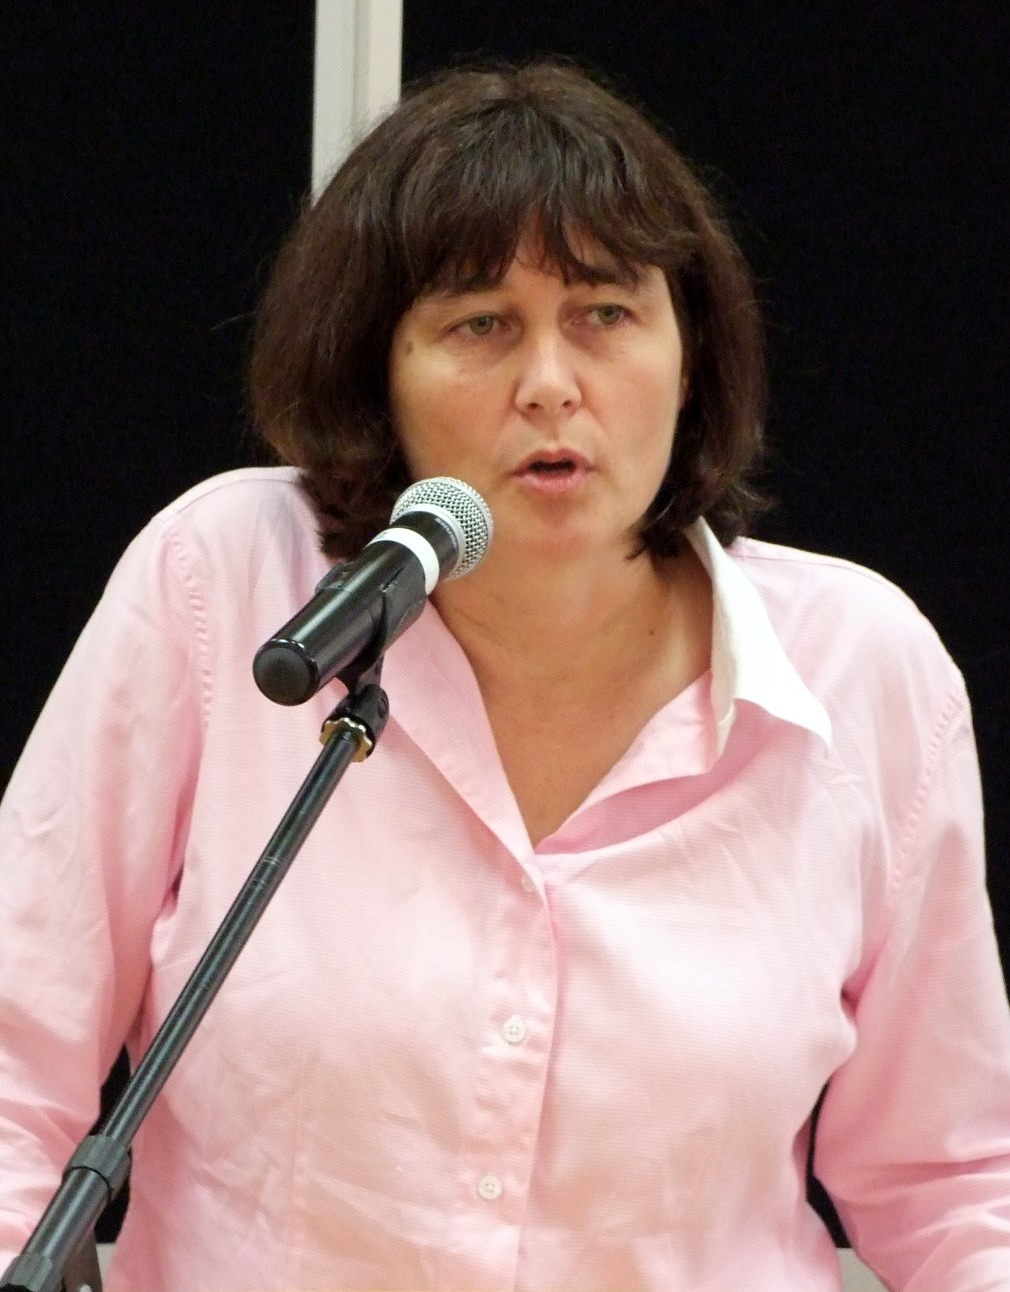 Helen Kelly